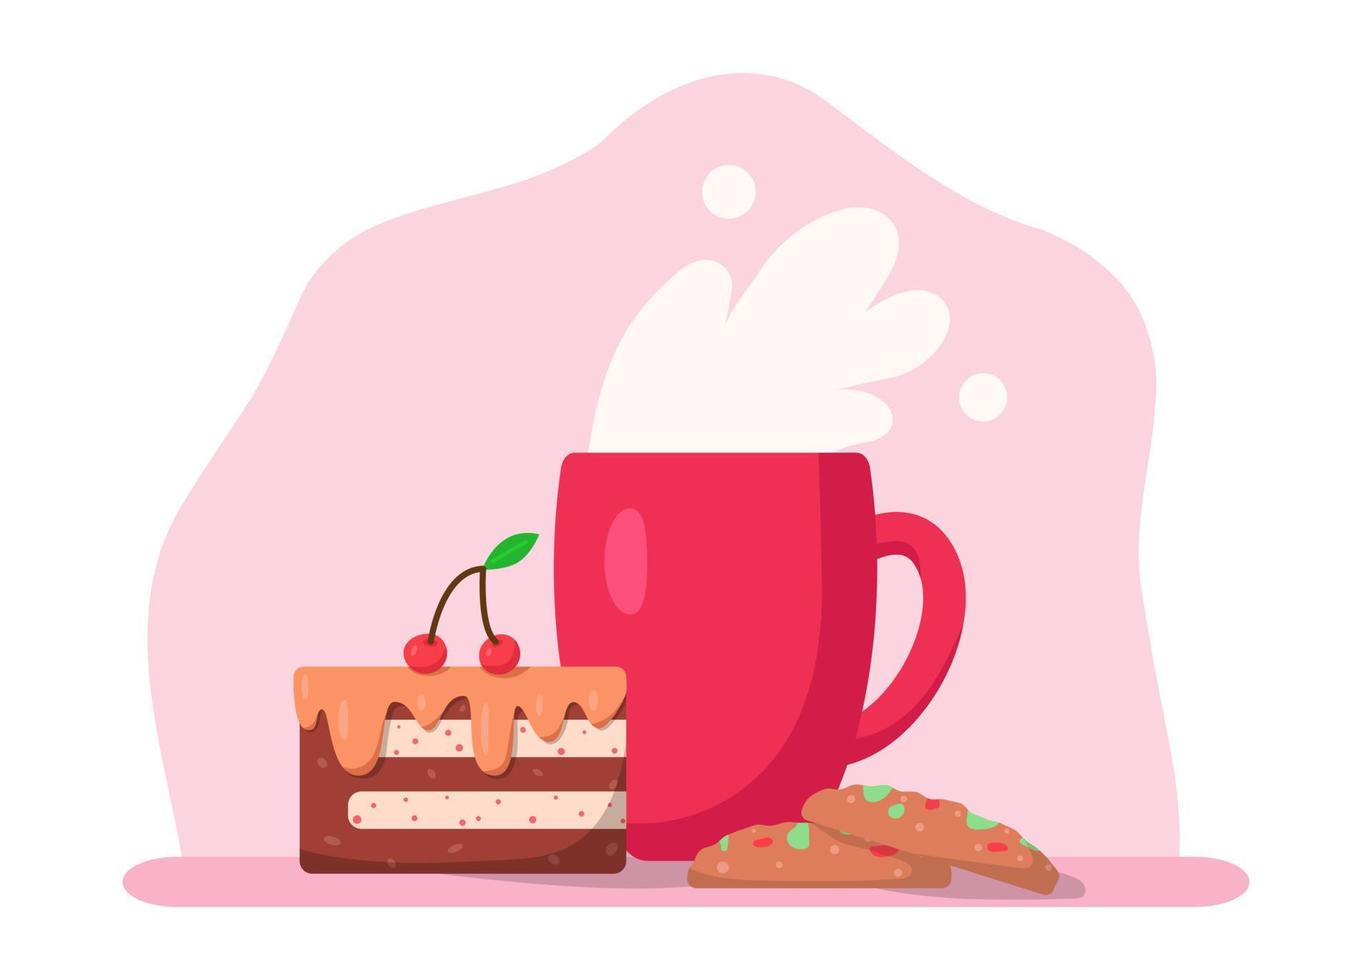 cup met drankje, koekjes en fluitje van een cent, vectorillustratie in cartoon vlakke stijl. koffie-, cacao- of theekop. kers en aardbei. lekker ontbijt of koffiepauze. print voor kaarten, sticker vector